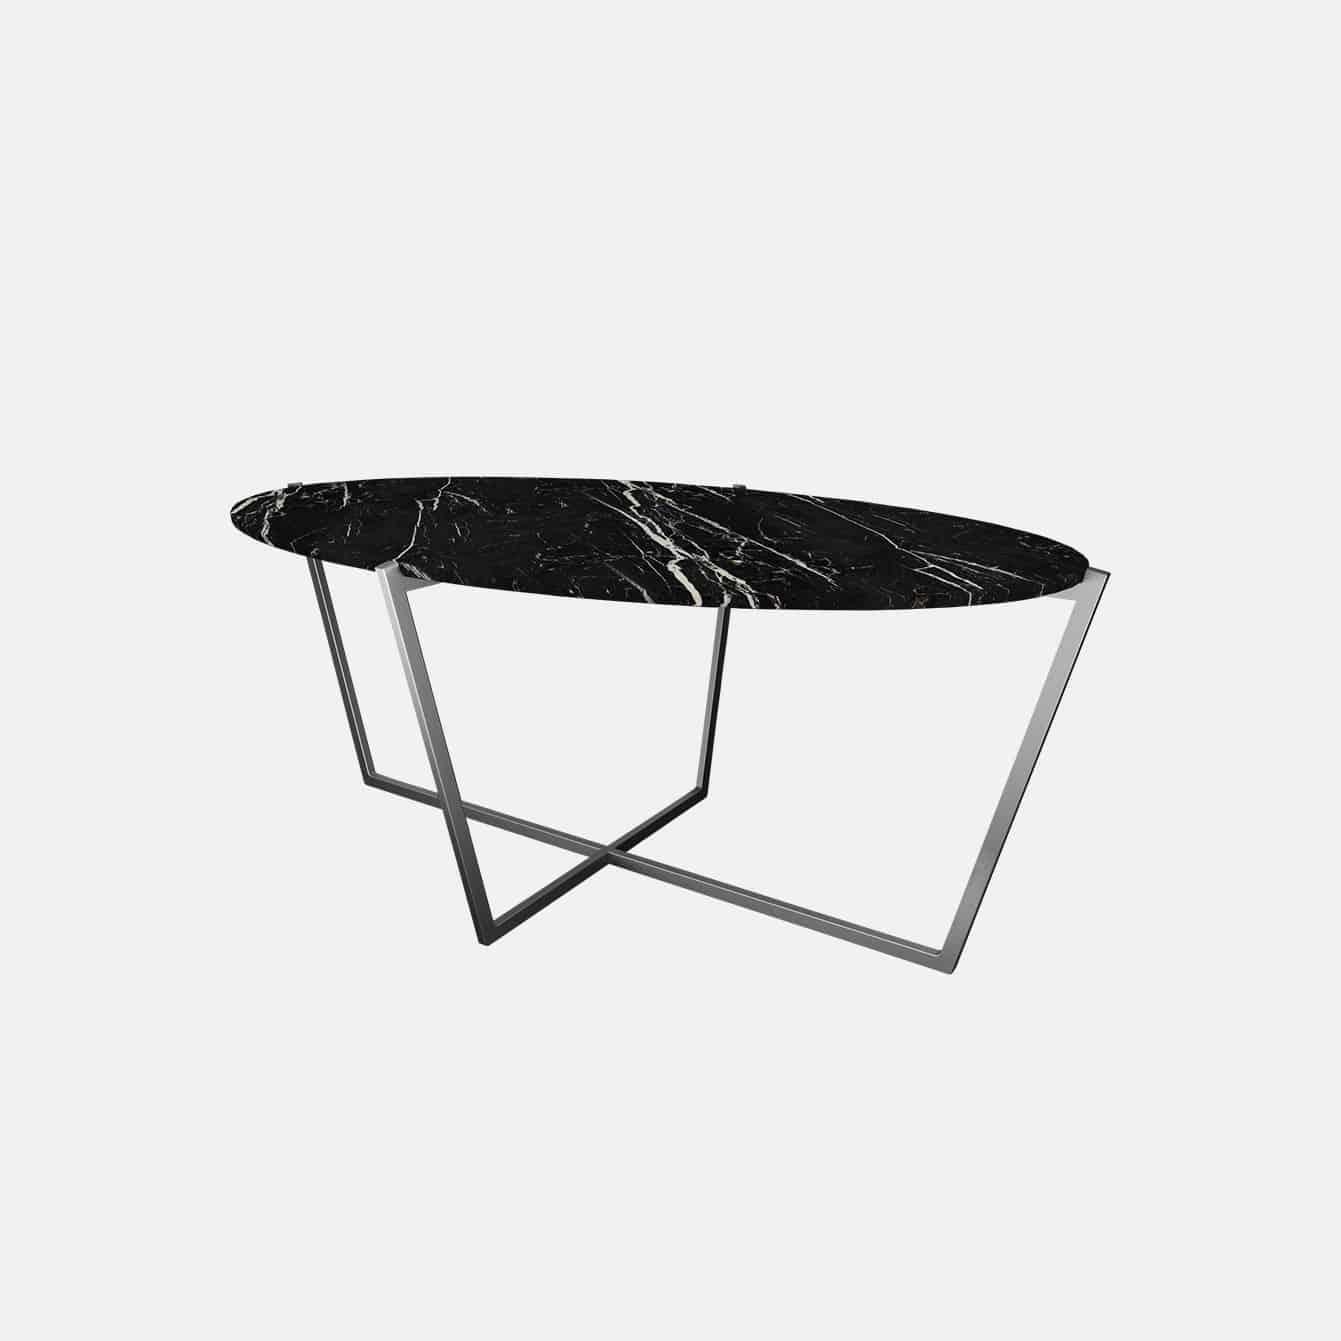 Scandinavian Modern NORDST EMMA Dining Table, Italian White Mountain Marble, Danish Modern Design For Sale